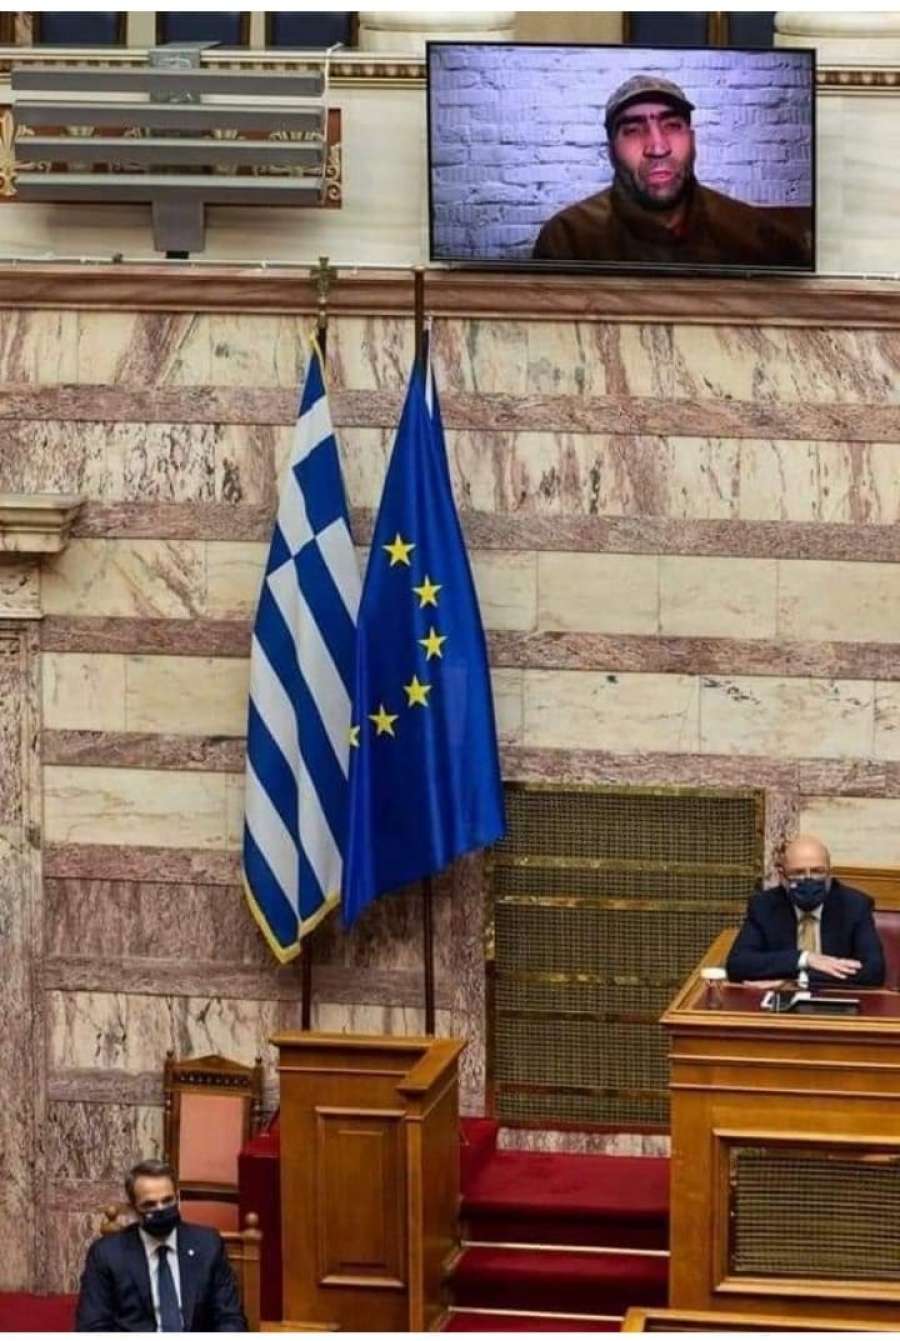 Ο φασισμός εισβάλλει στη Βουλή των Ελλήνων μέσω Ουκρανίας